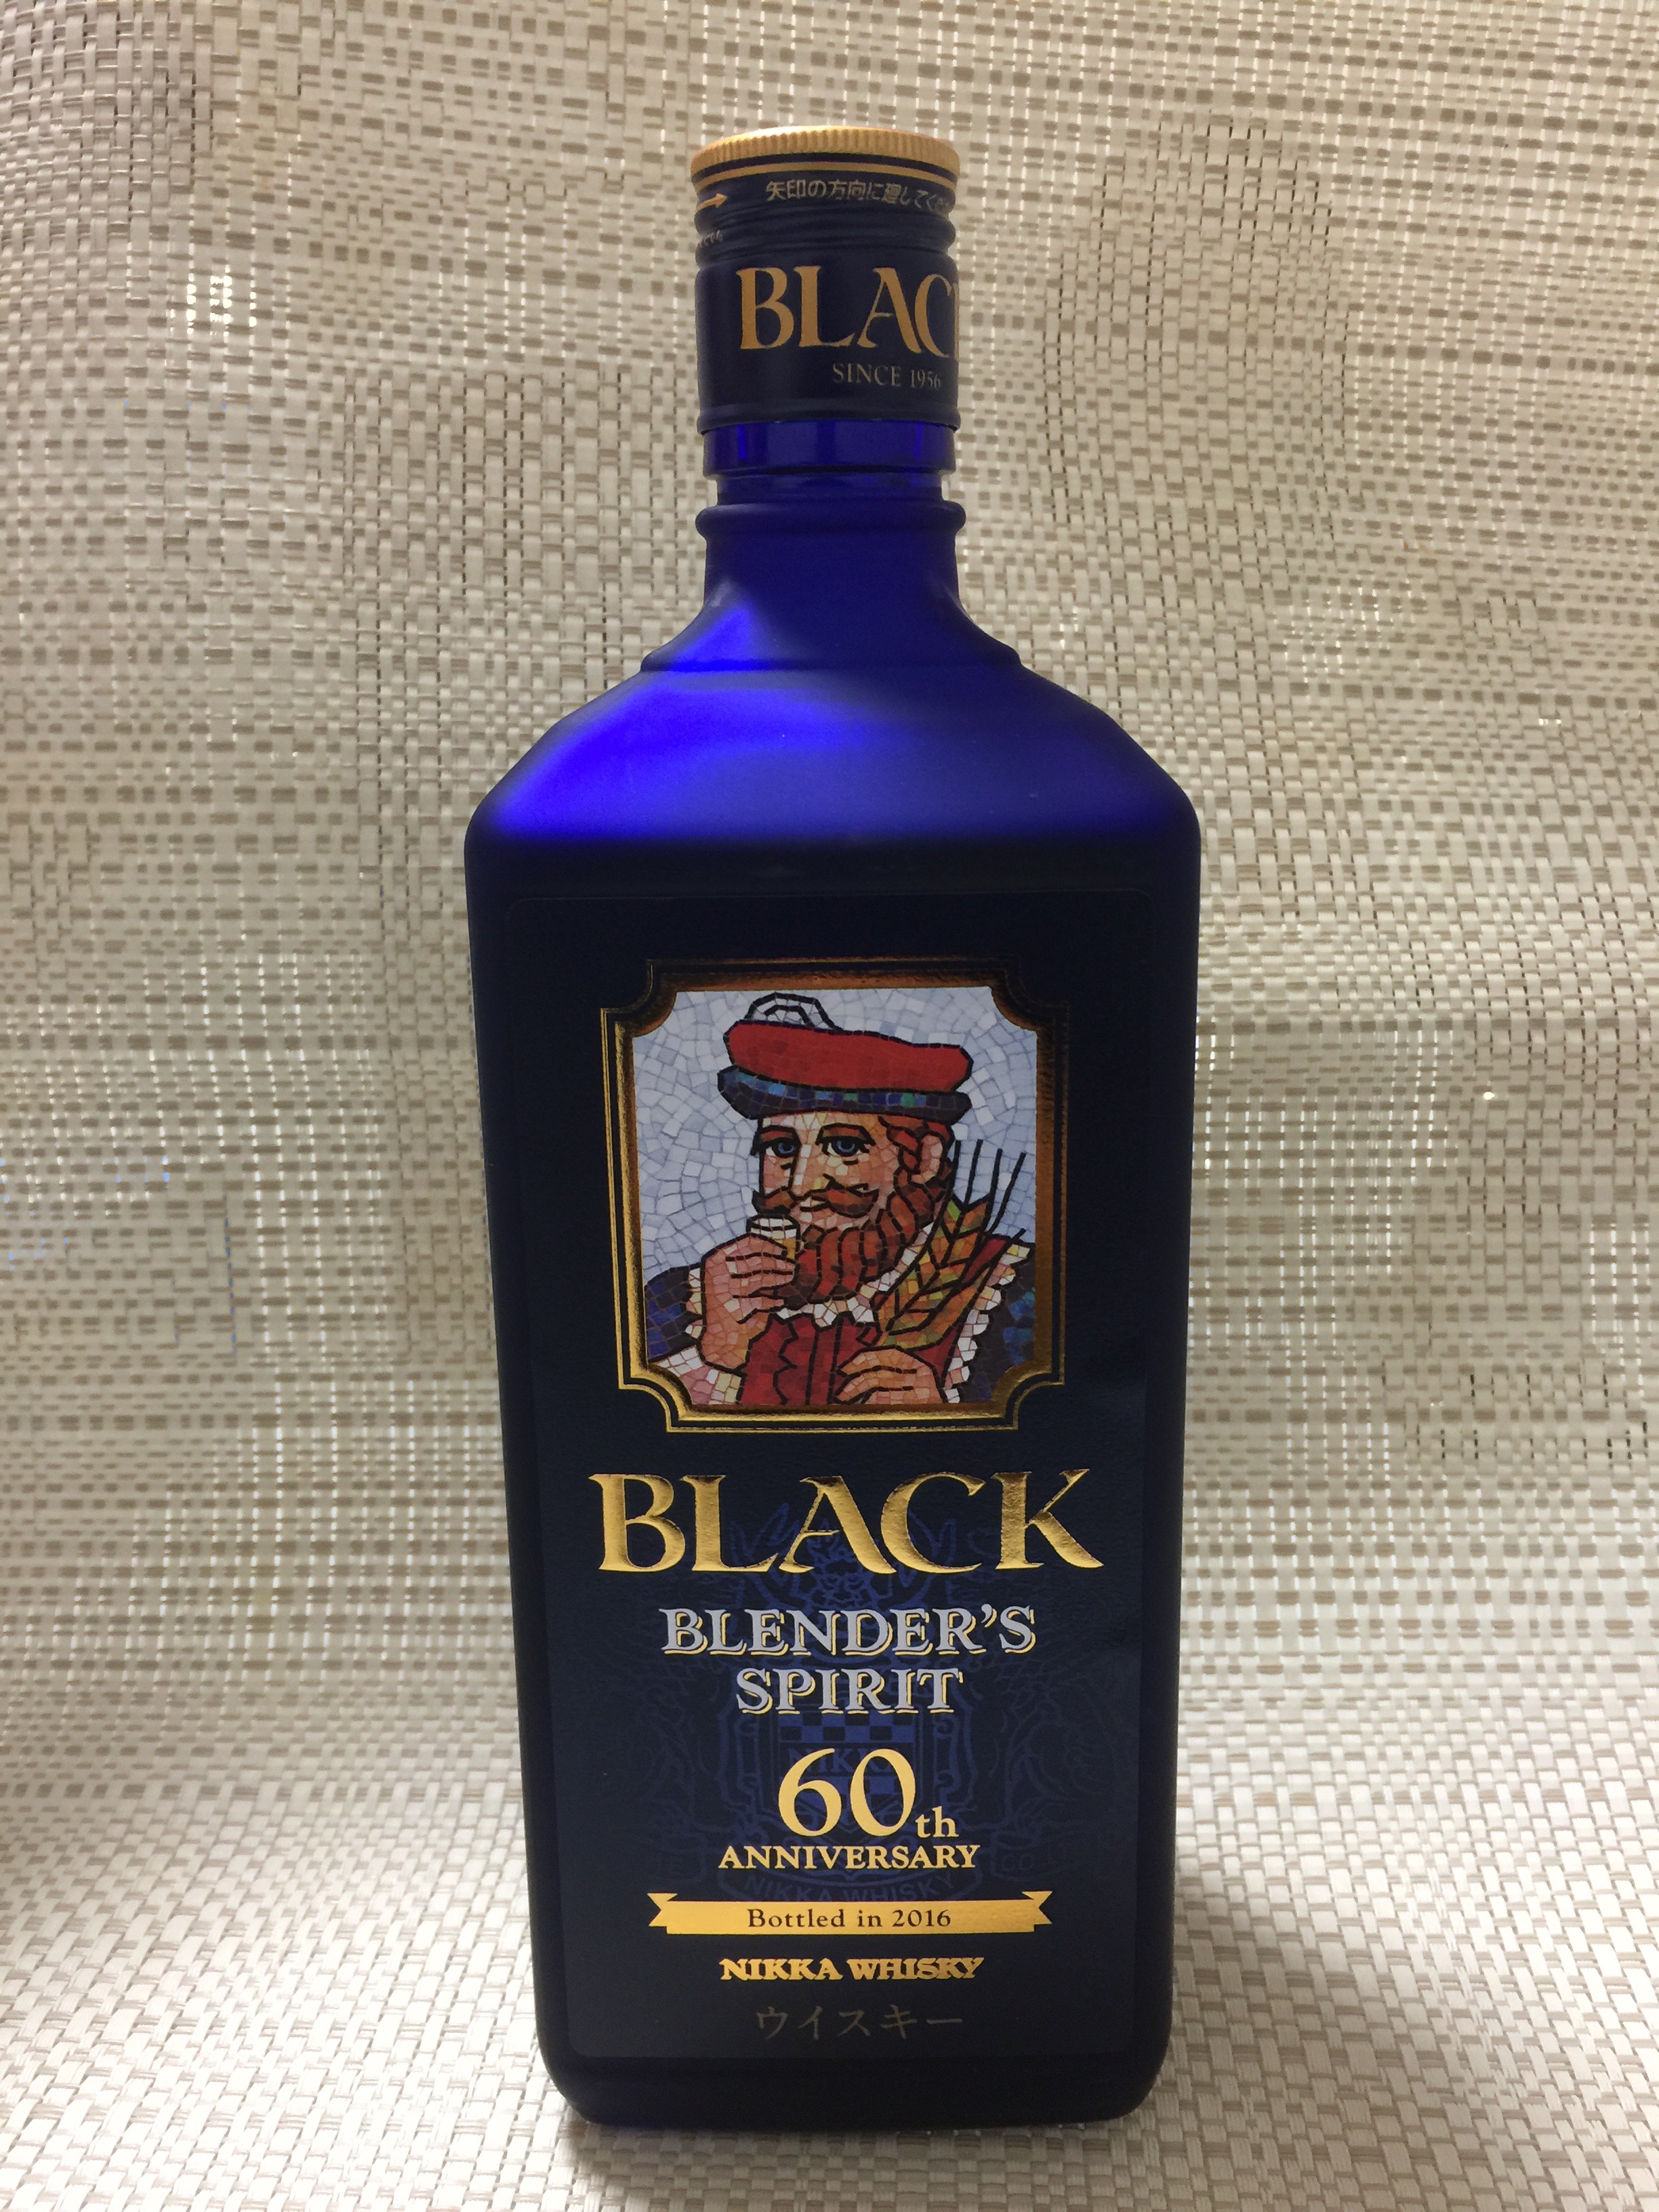 ブラックニッカ発売60周年記念ボトル ブレンダーズスピリット 43